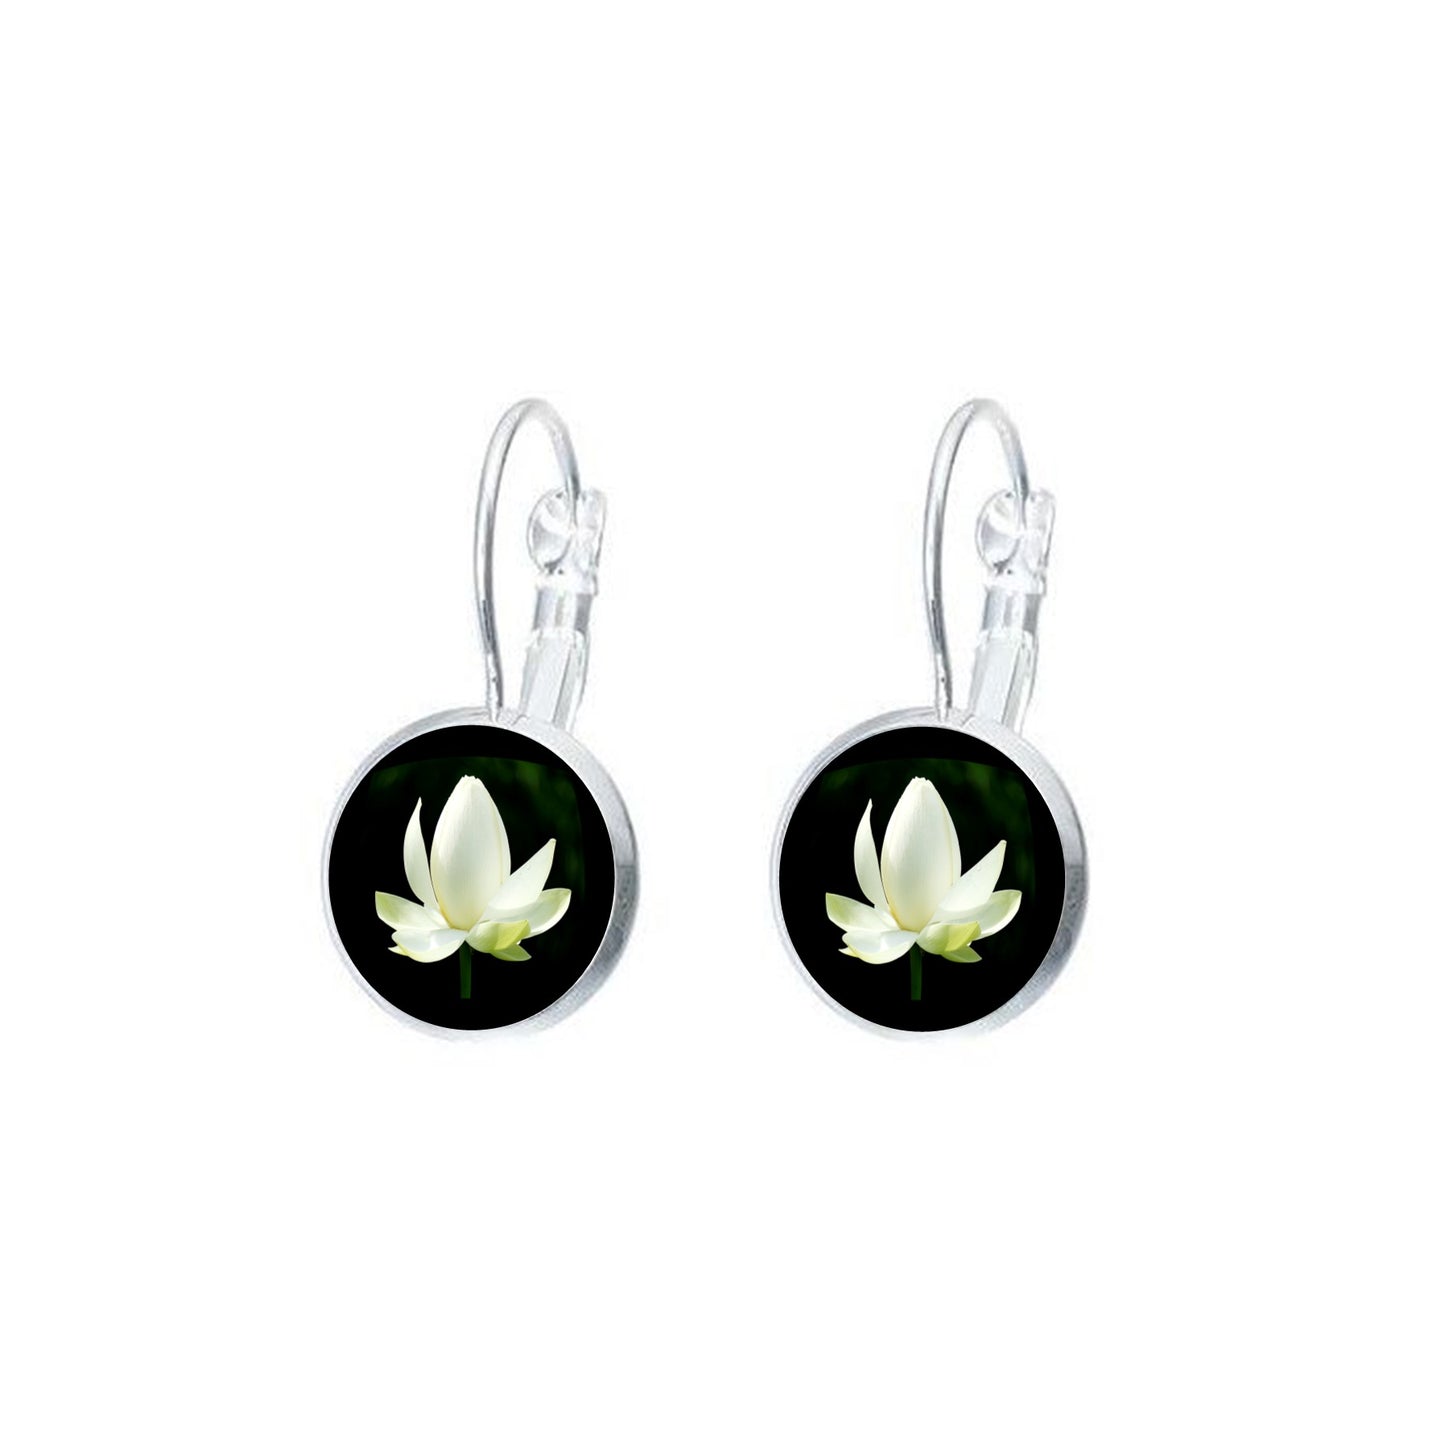 Boucles d'oreilles dormeuses argentées cabochon 12 mm photo fleur lotus blanc